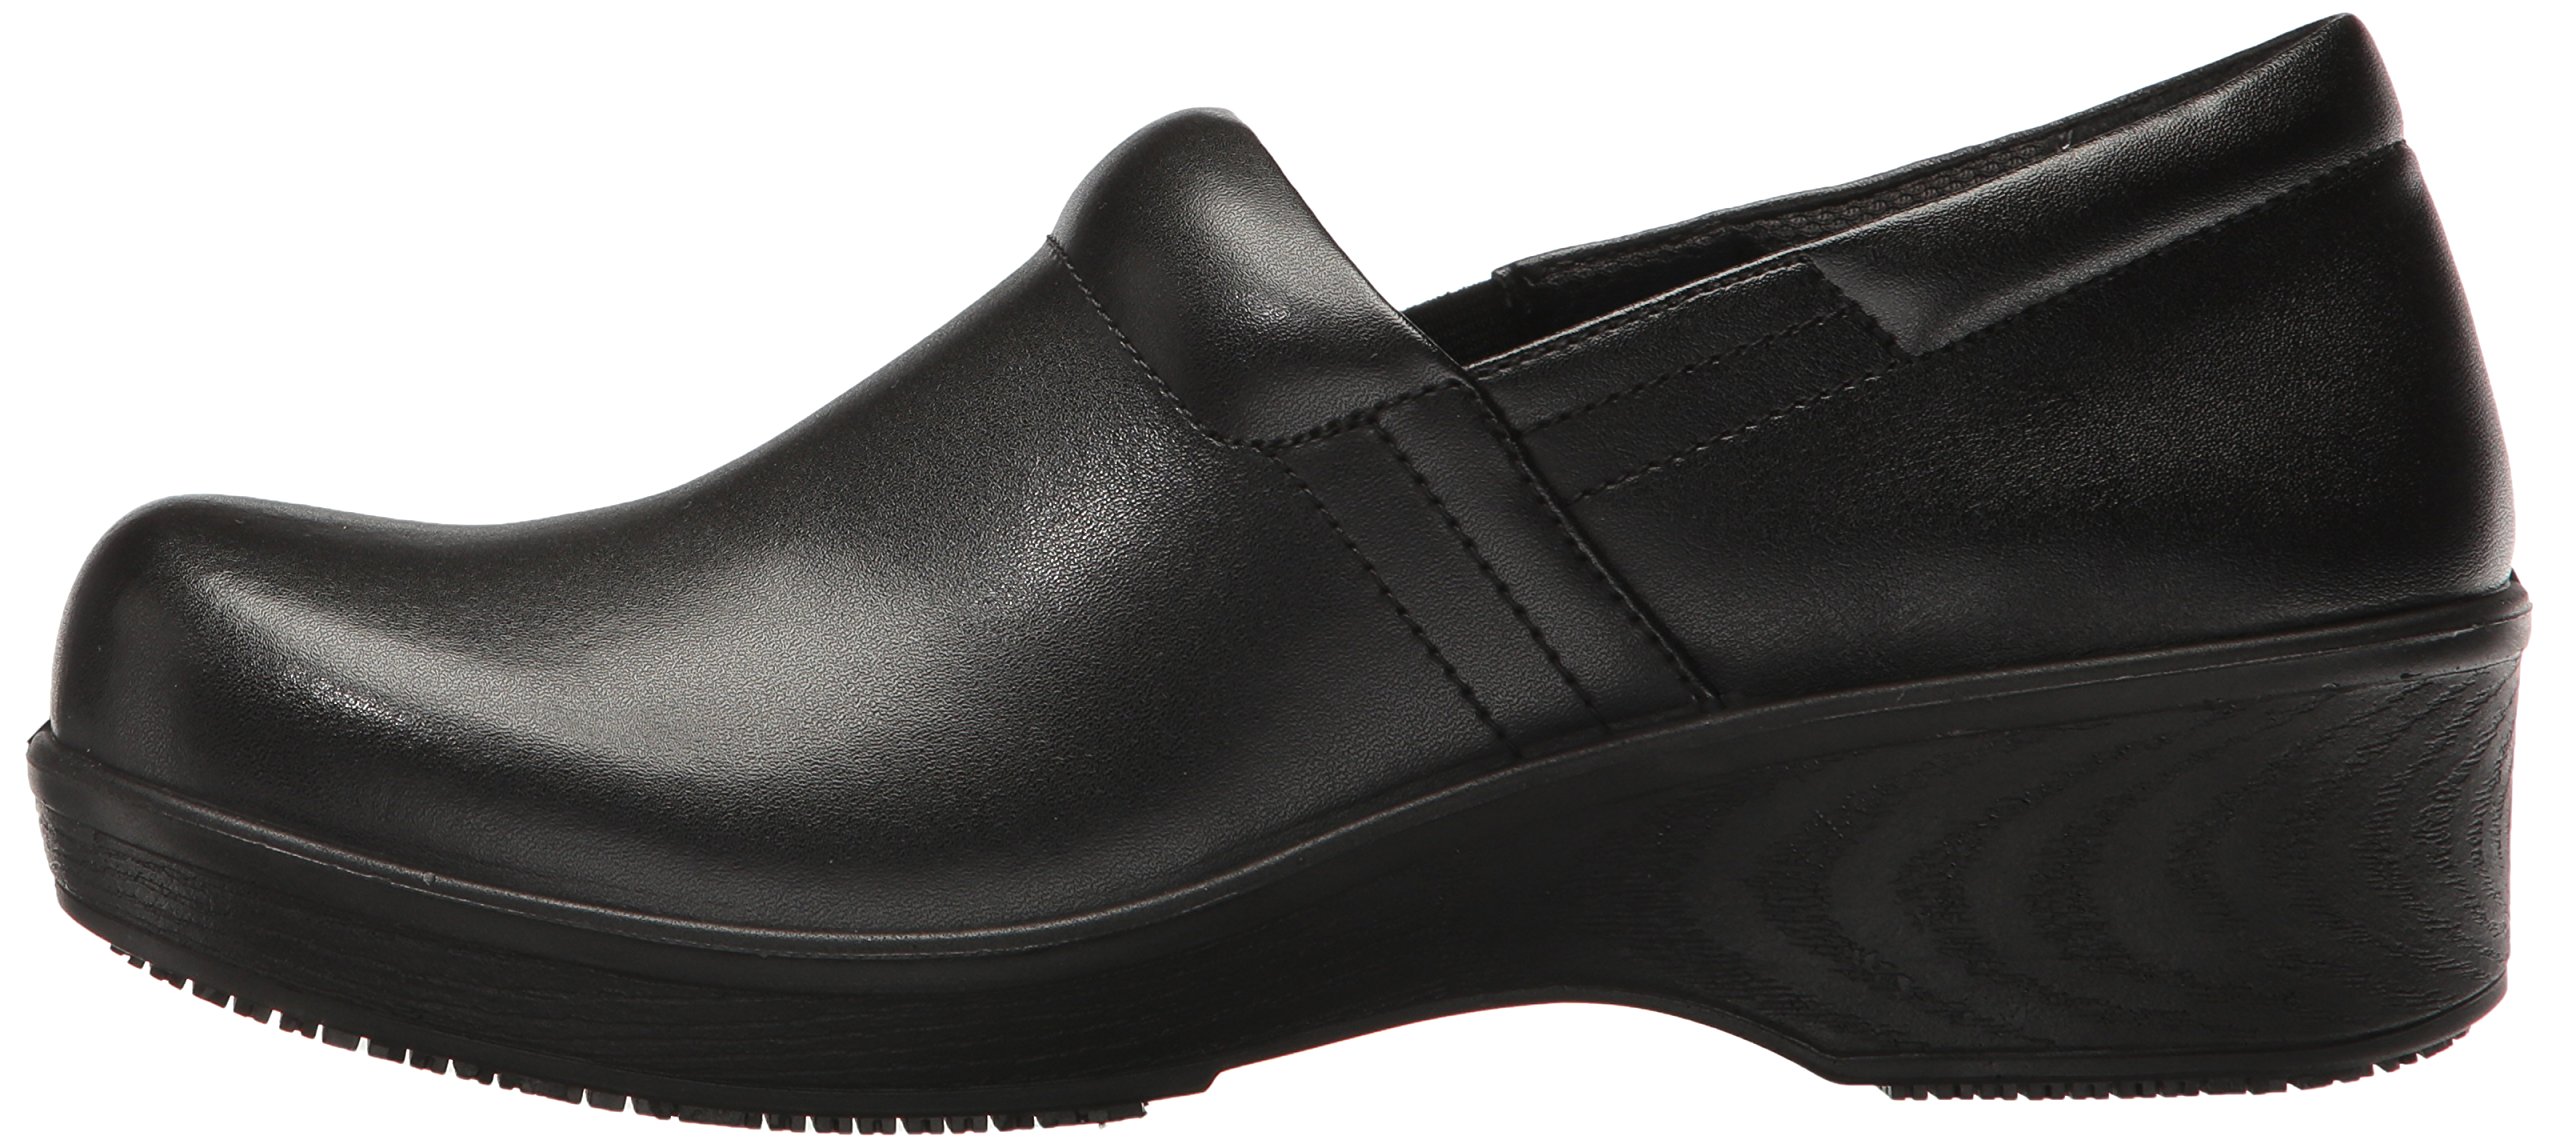 Dr. Scholl's Shoes Women's Dynamo Slip Resistant Work Clog